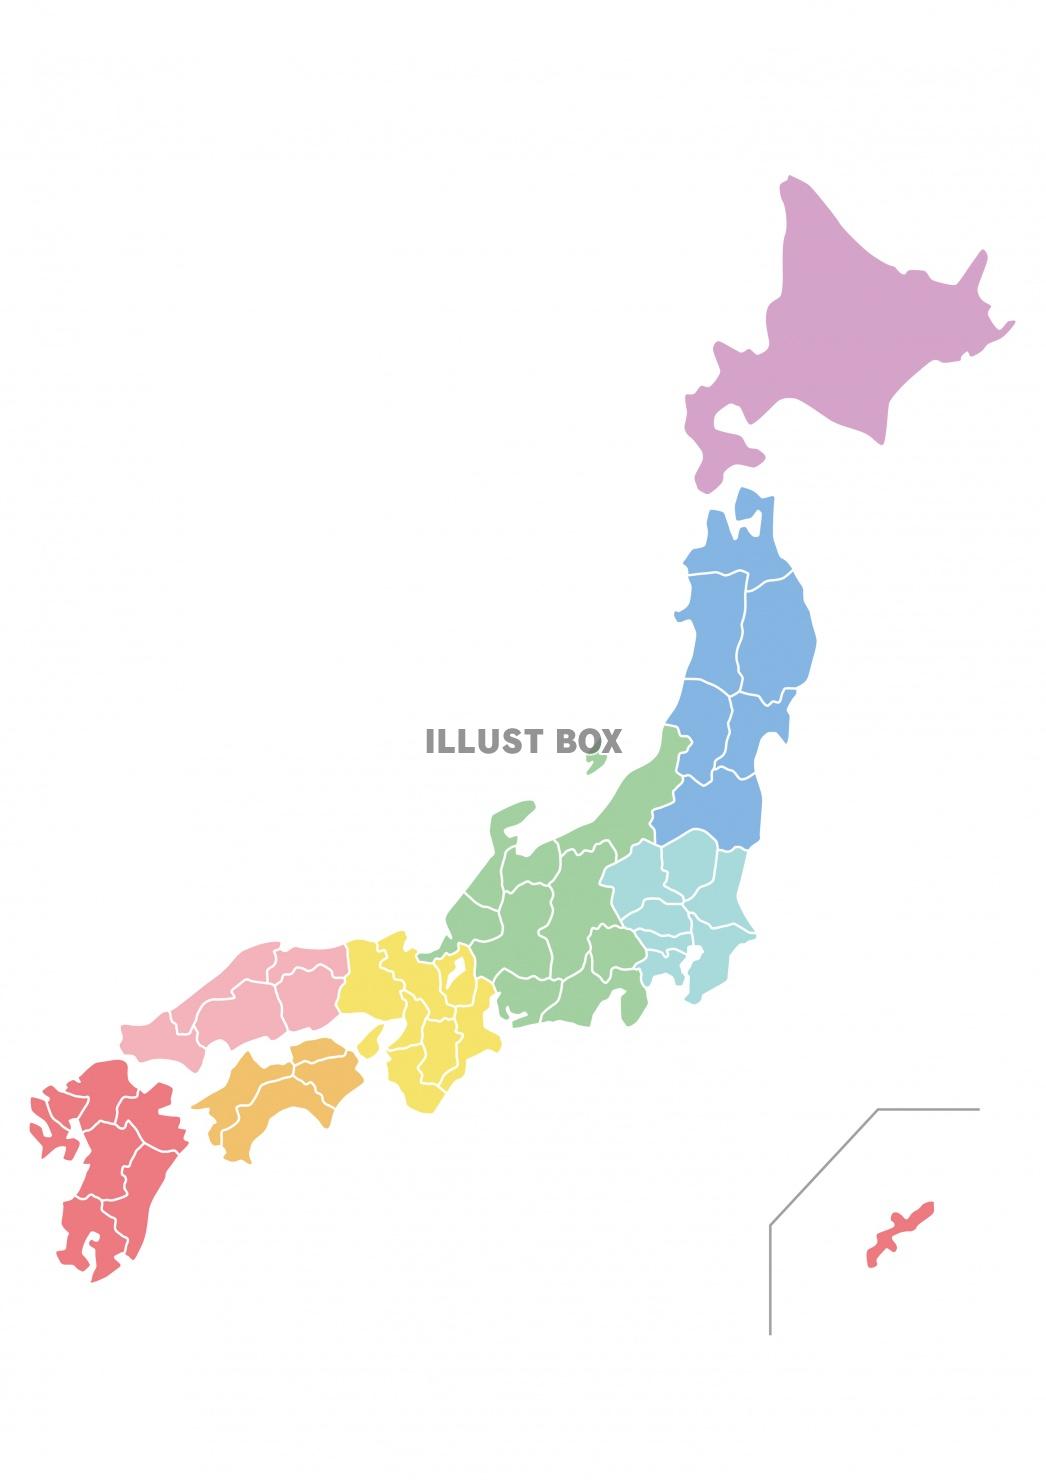 無料イラスト Japan 日本地図 地方区分 県境あり カラー